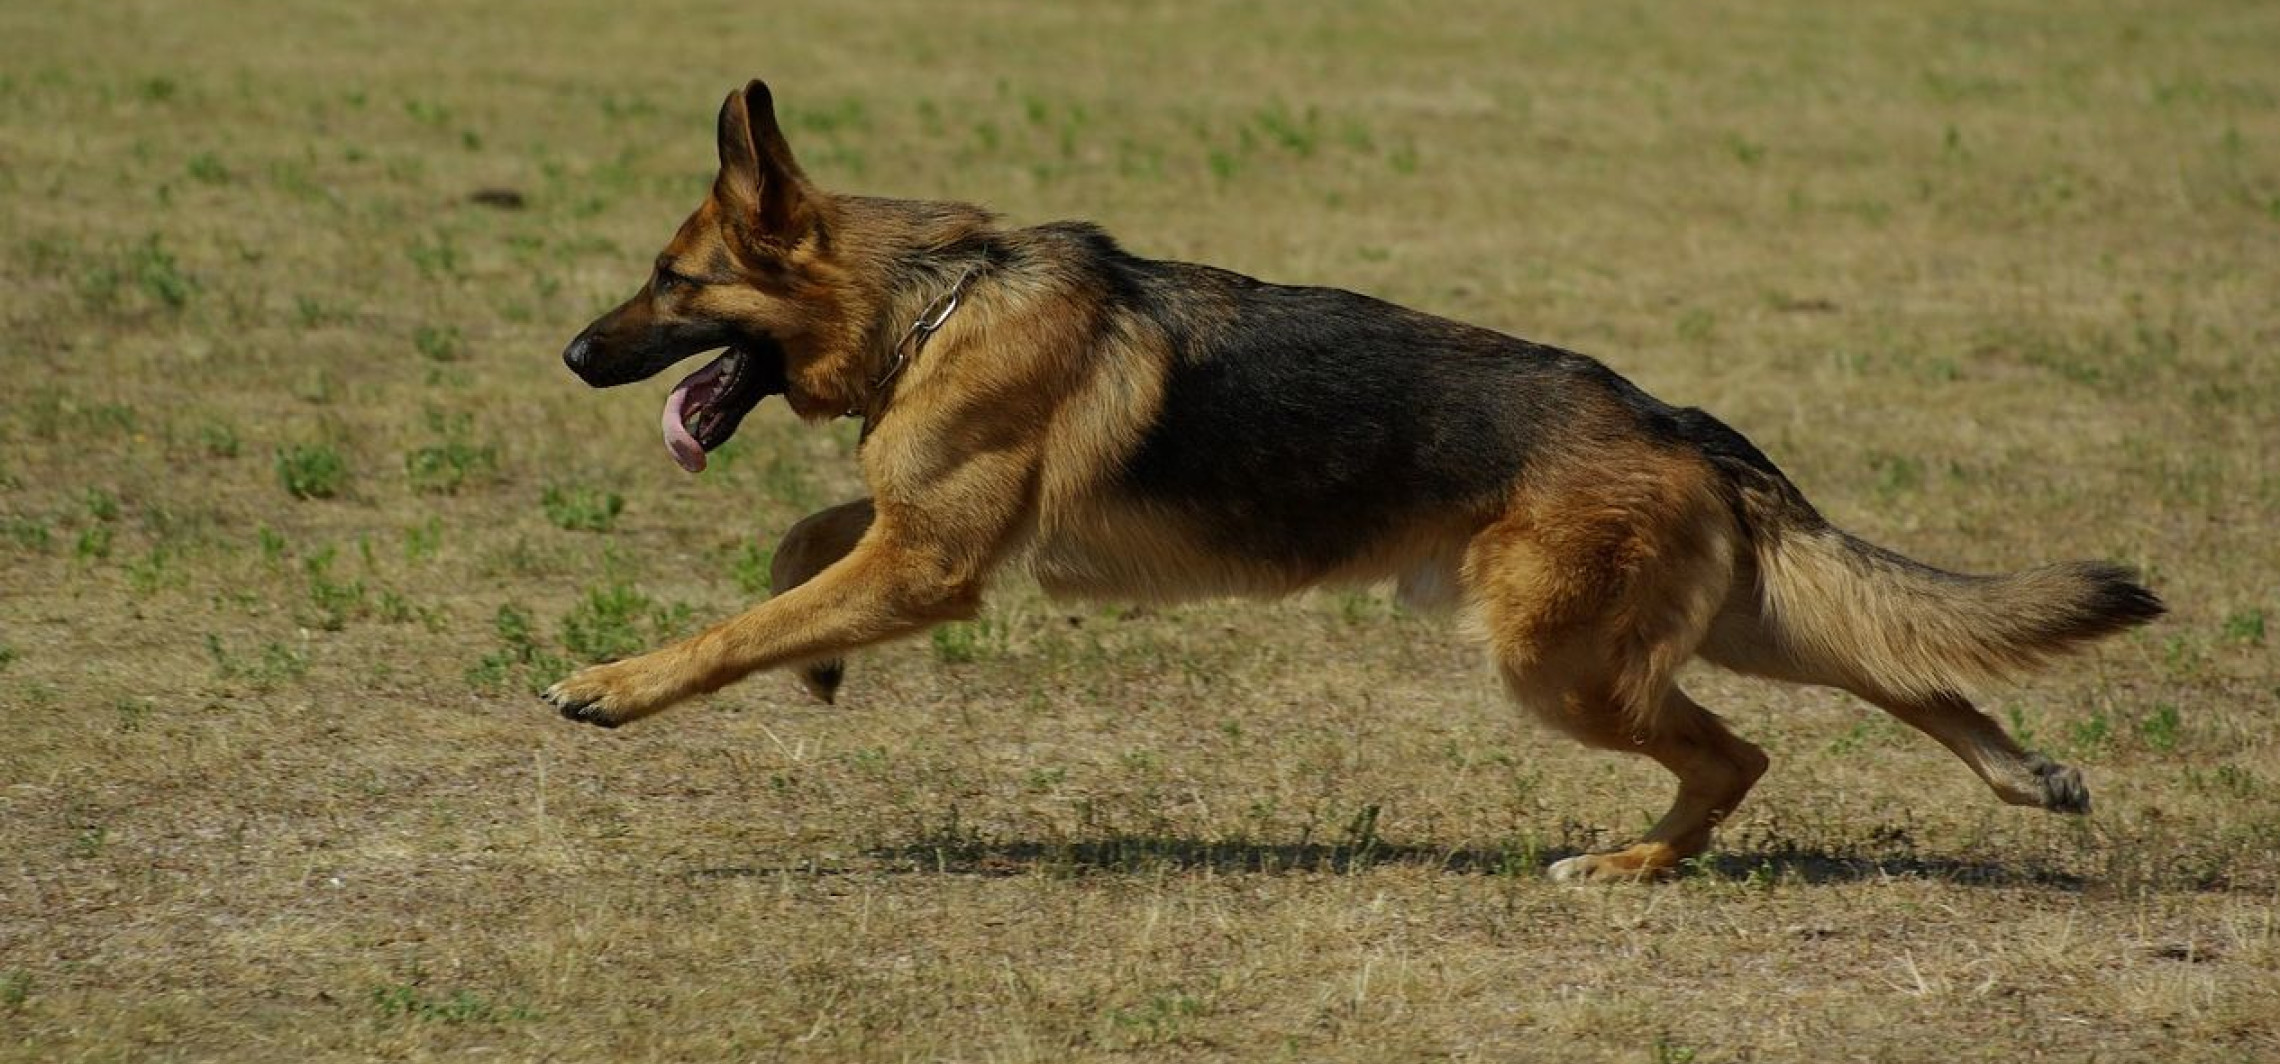 Inowrocław - Pies zaatakował innego psa. Jest apel policji